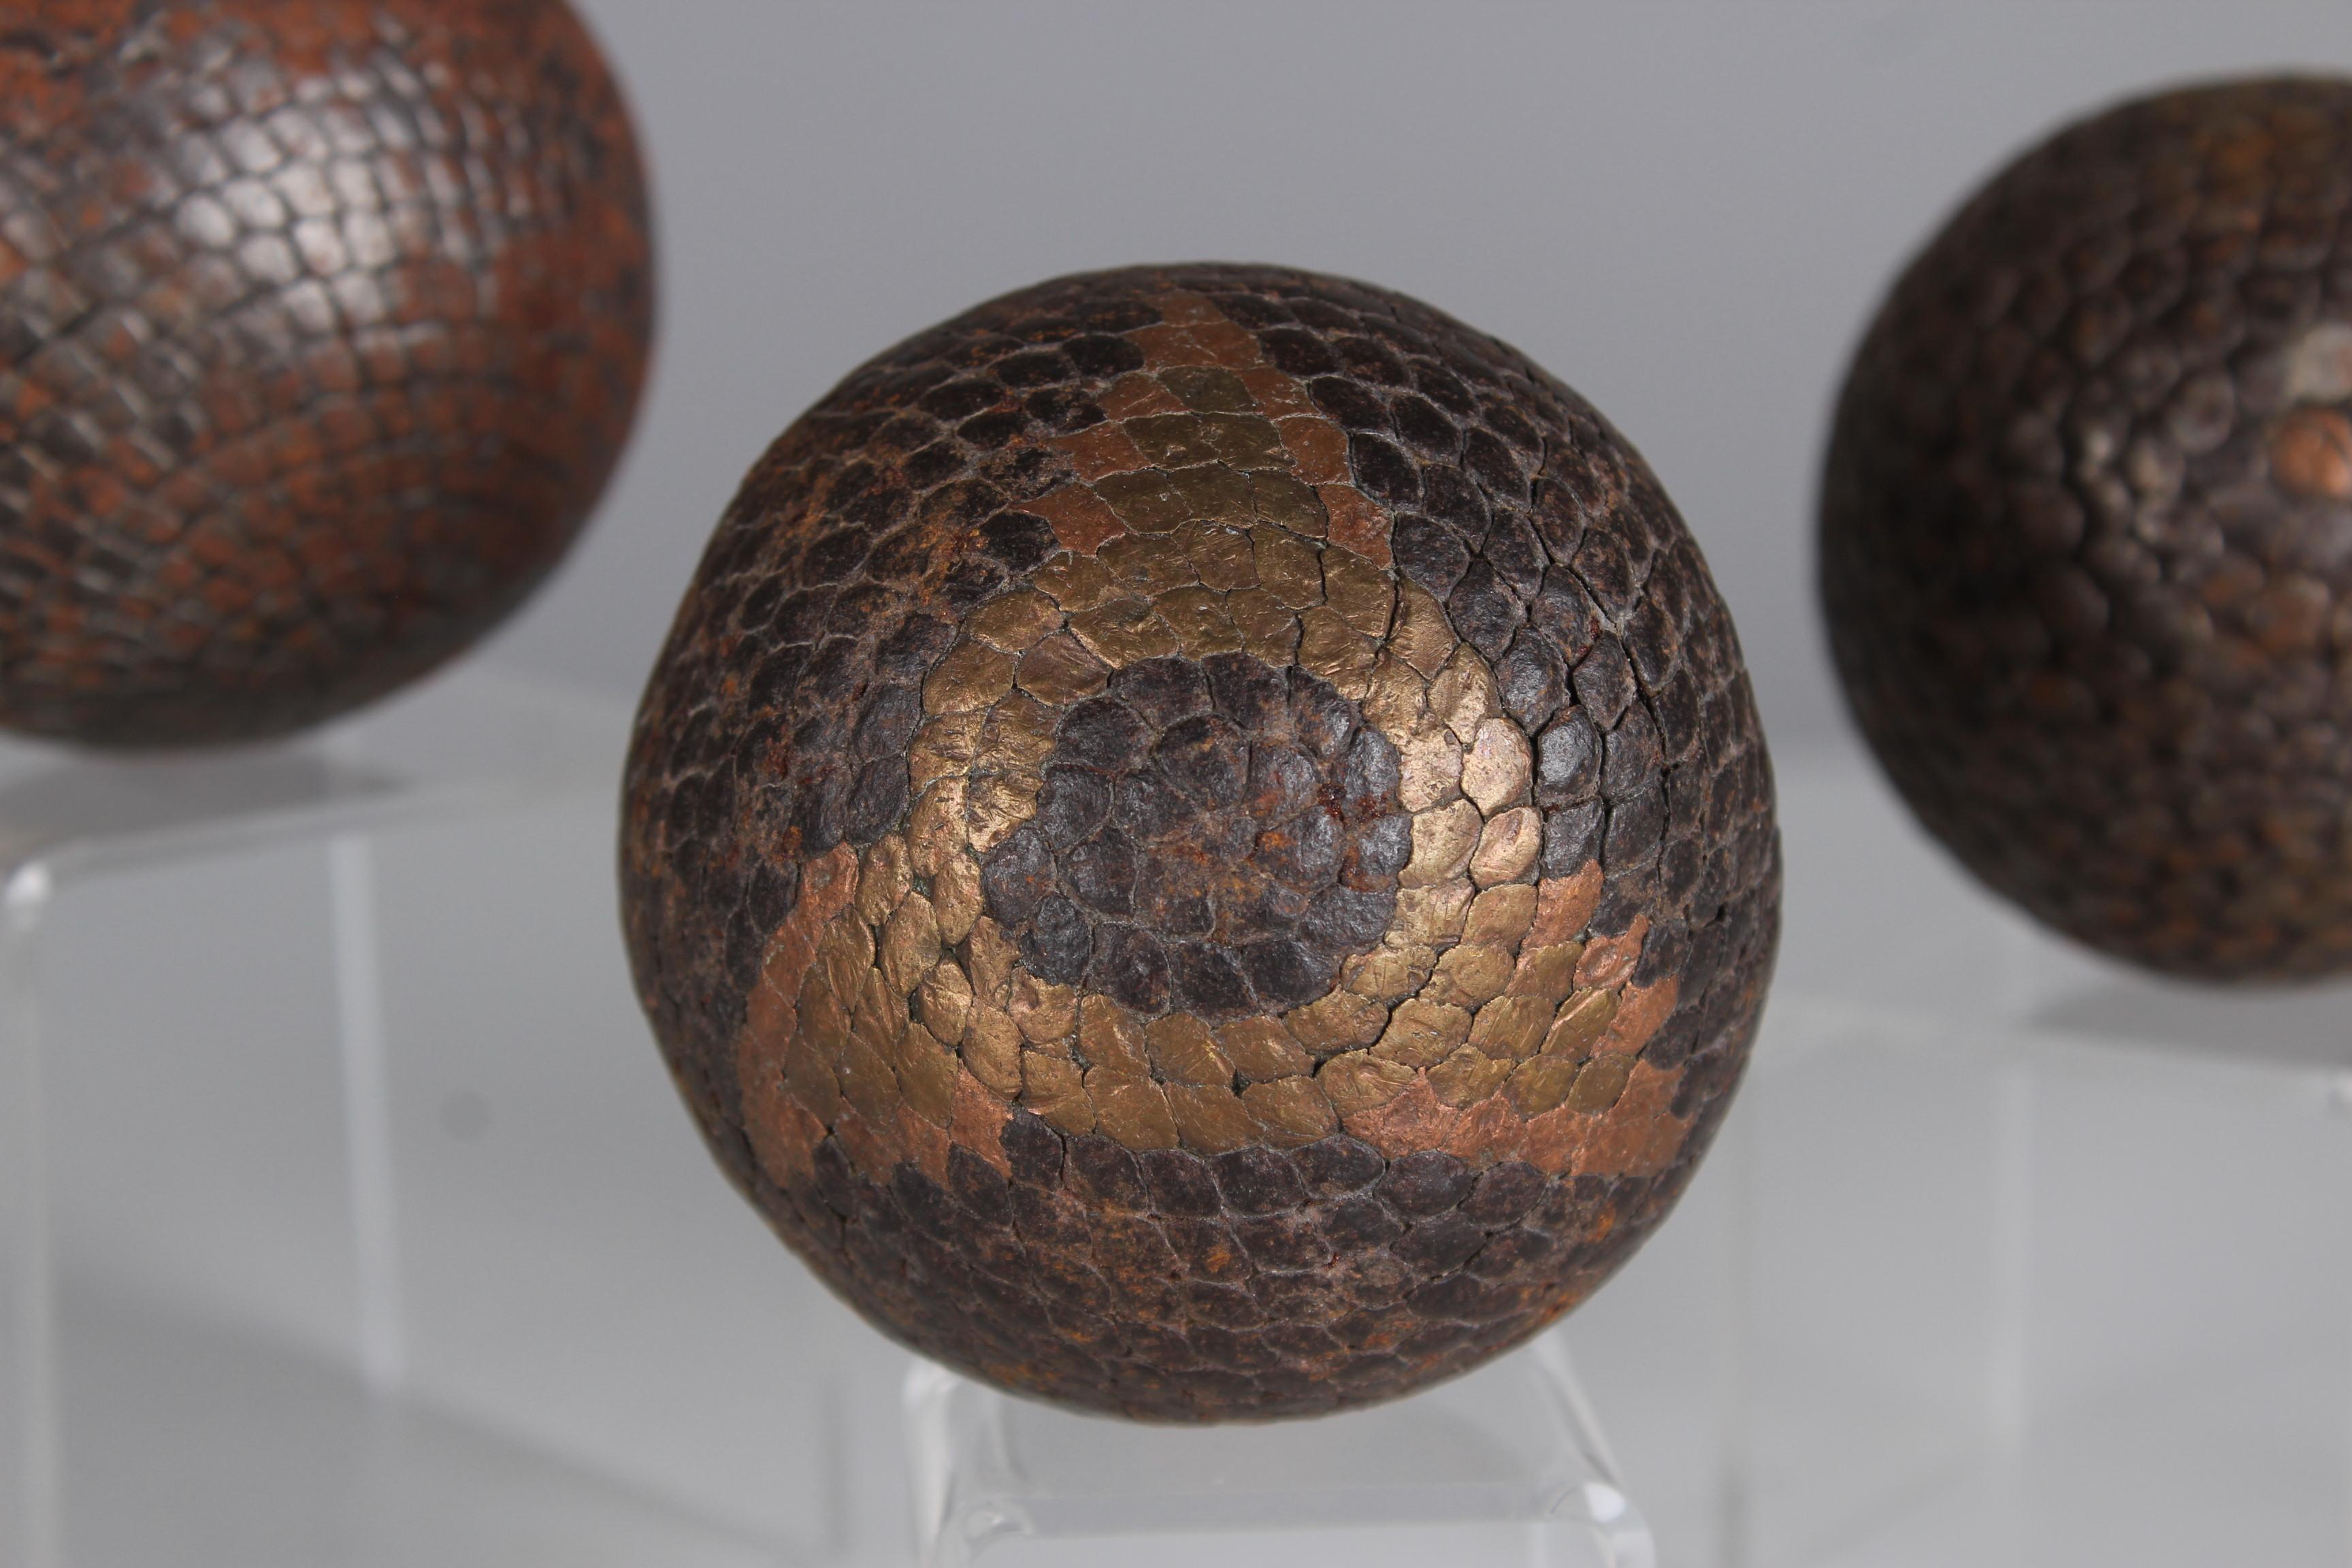 Magnifique et unique ensemble de trois boules Boule, France, fin du 19e siècle.

Au XIXe siècle, la fabrication des boules de pétanque a connu un développement important en France à mesure que le jeu de boules, notamment la variante pétanque,